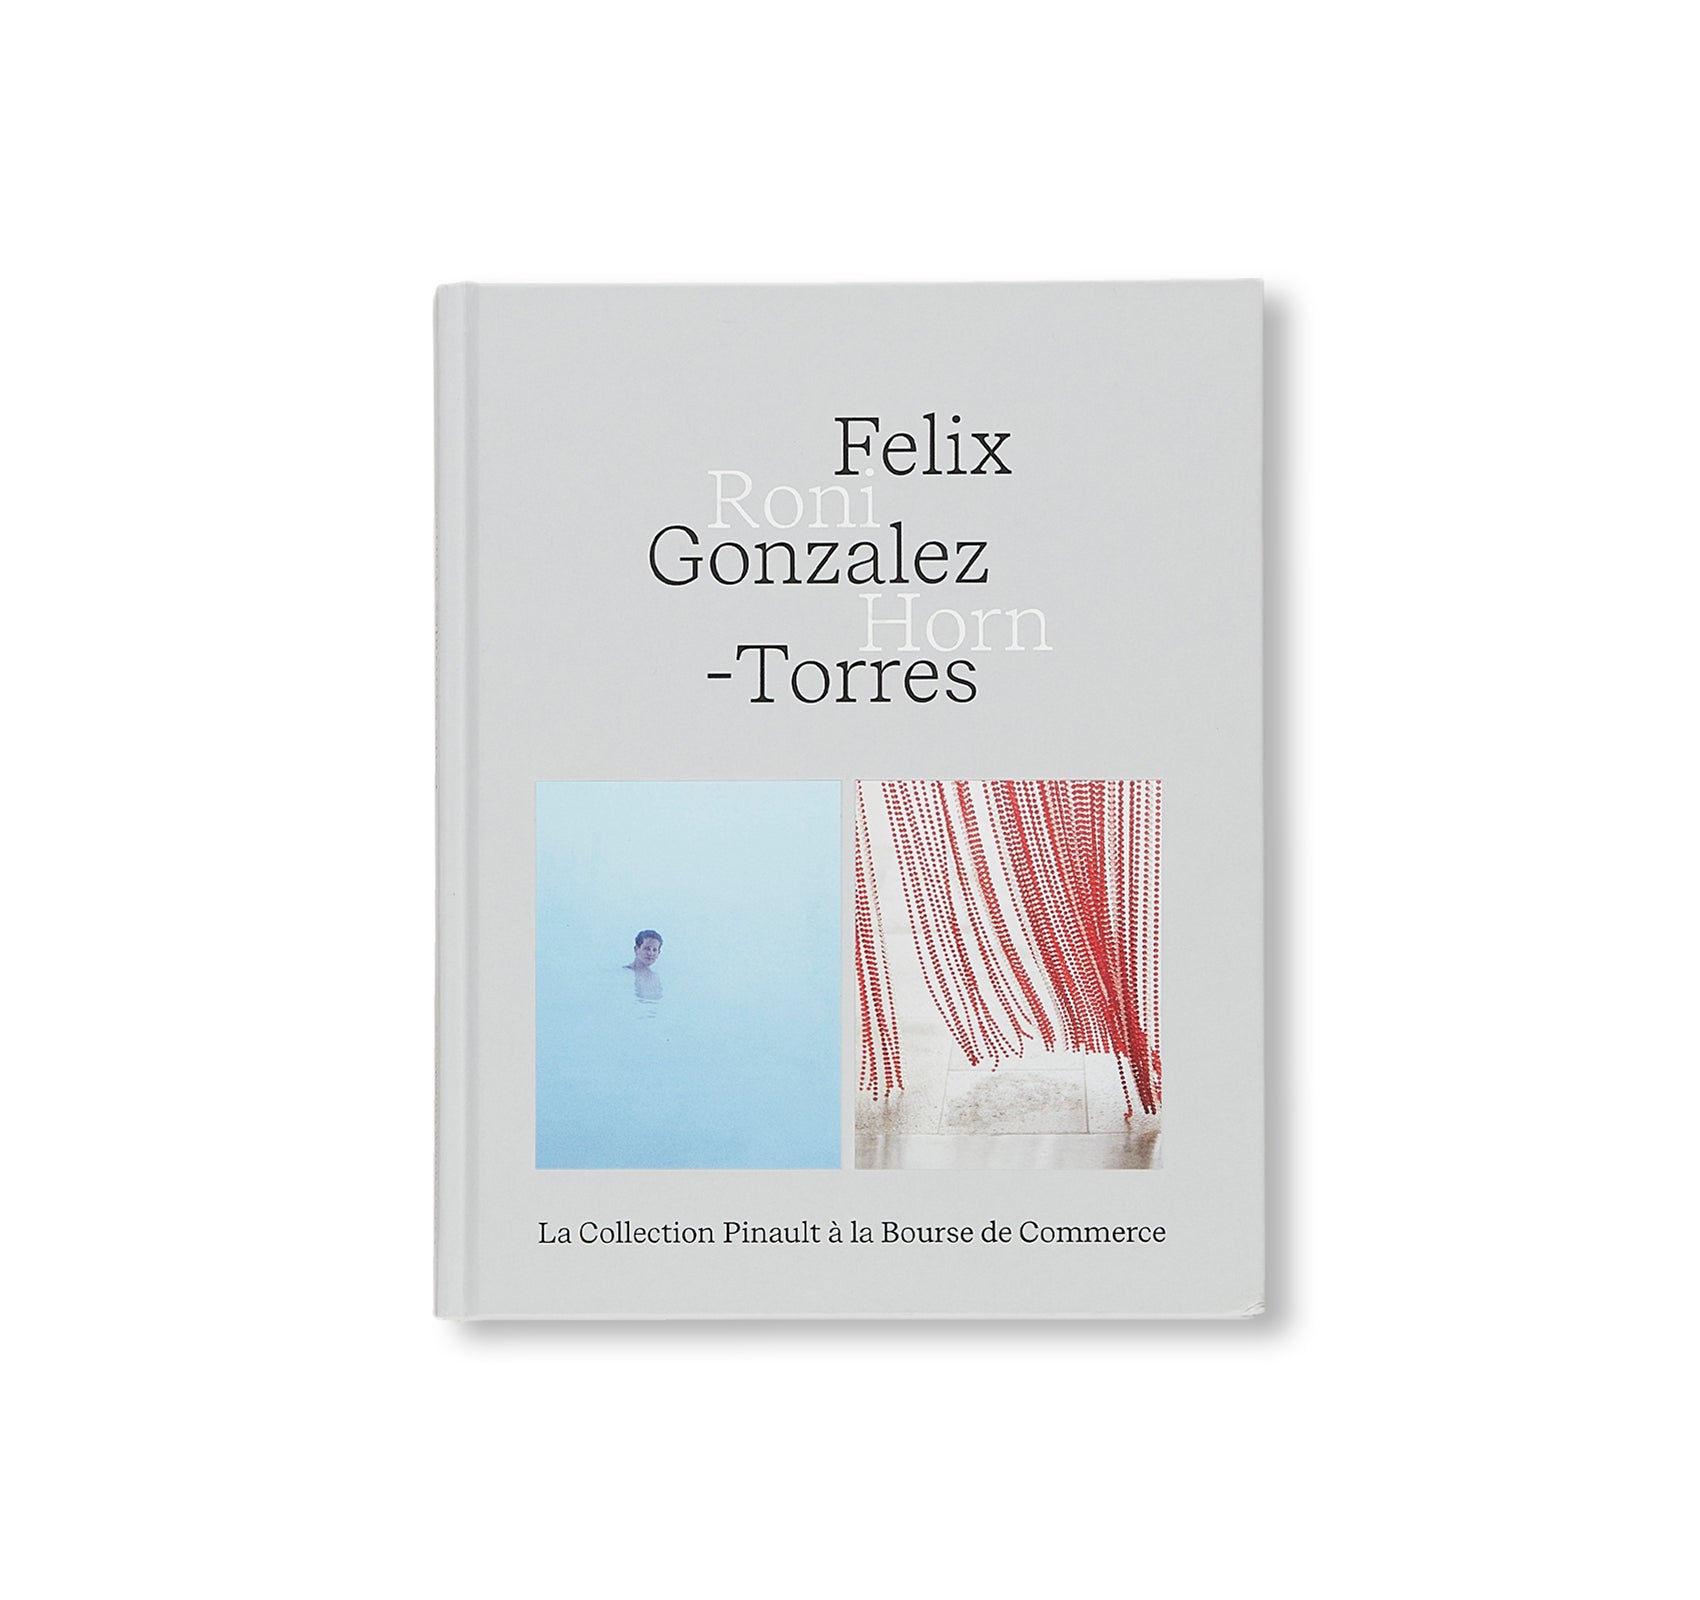 FELIX GONZALEZ-TORRES — RONI HORN by Felix Gonzalez-Torres, Roni Horn